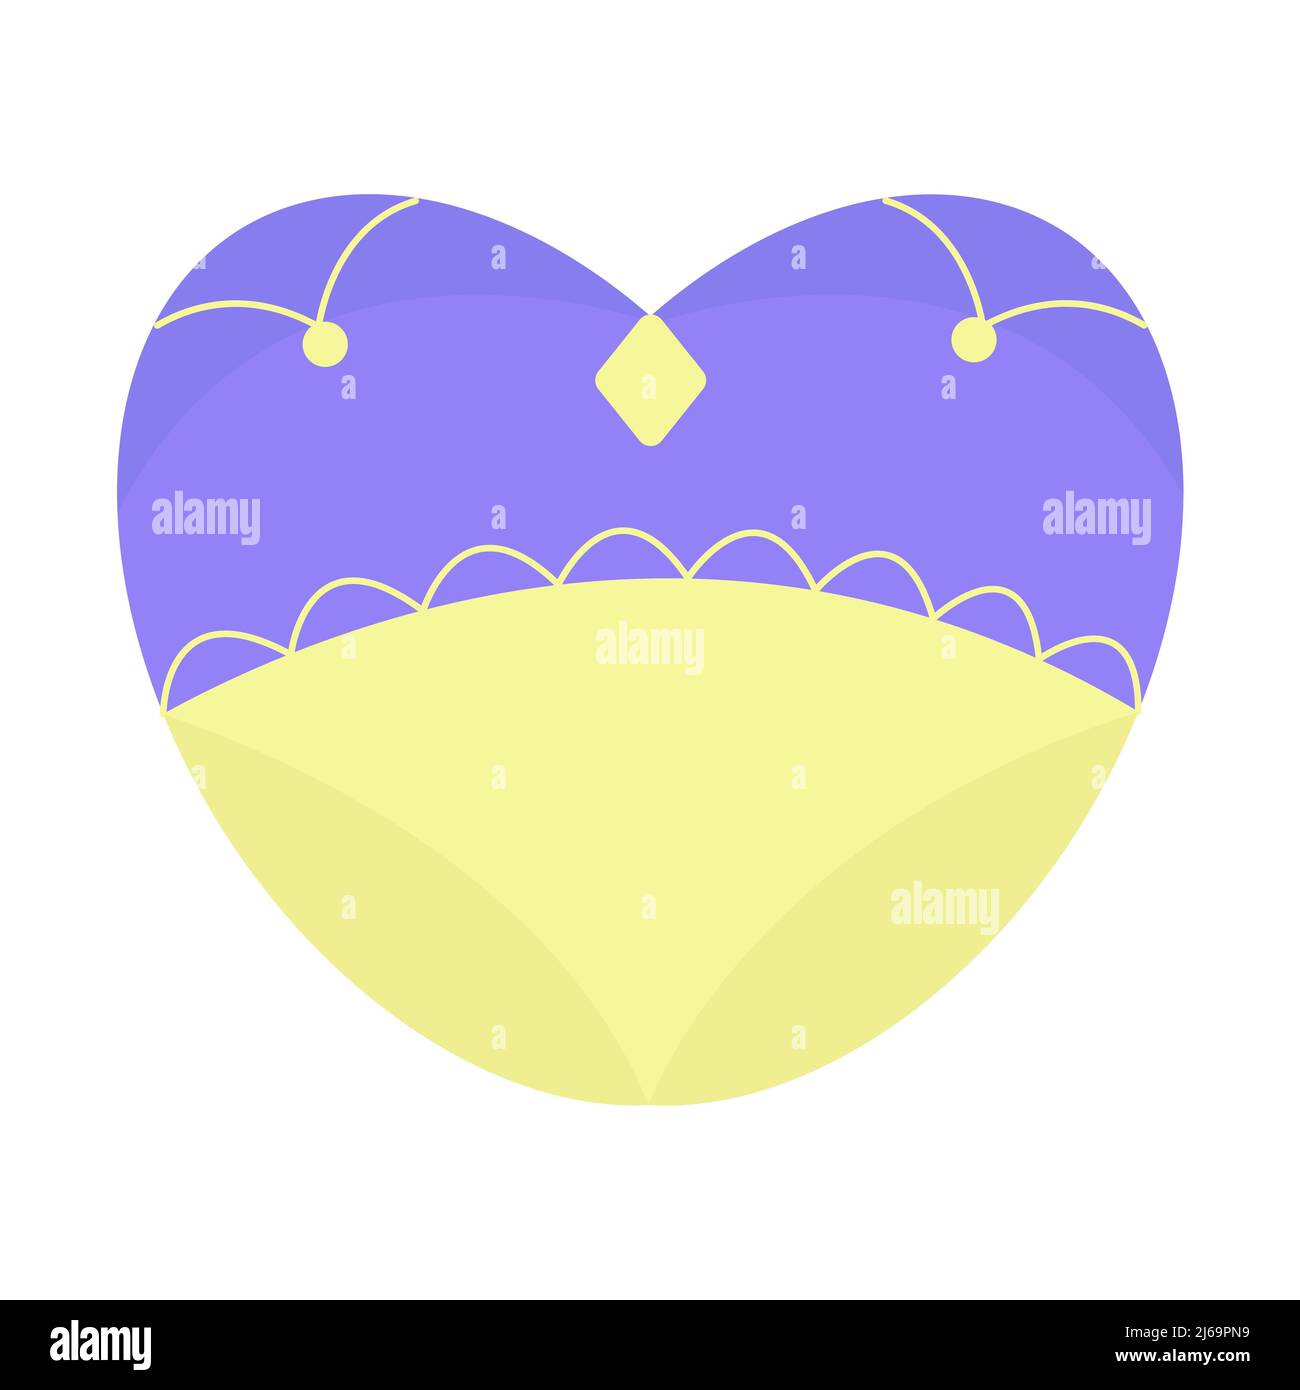 Blue-yellow heart, illustration in Ukrainian style Stock Vector